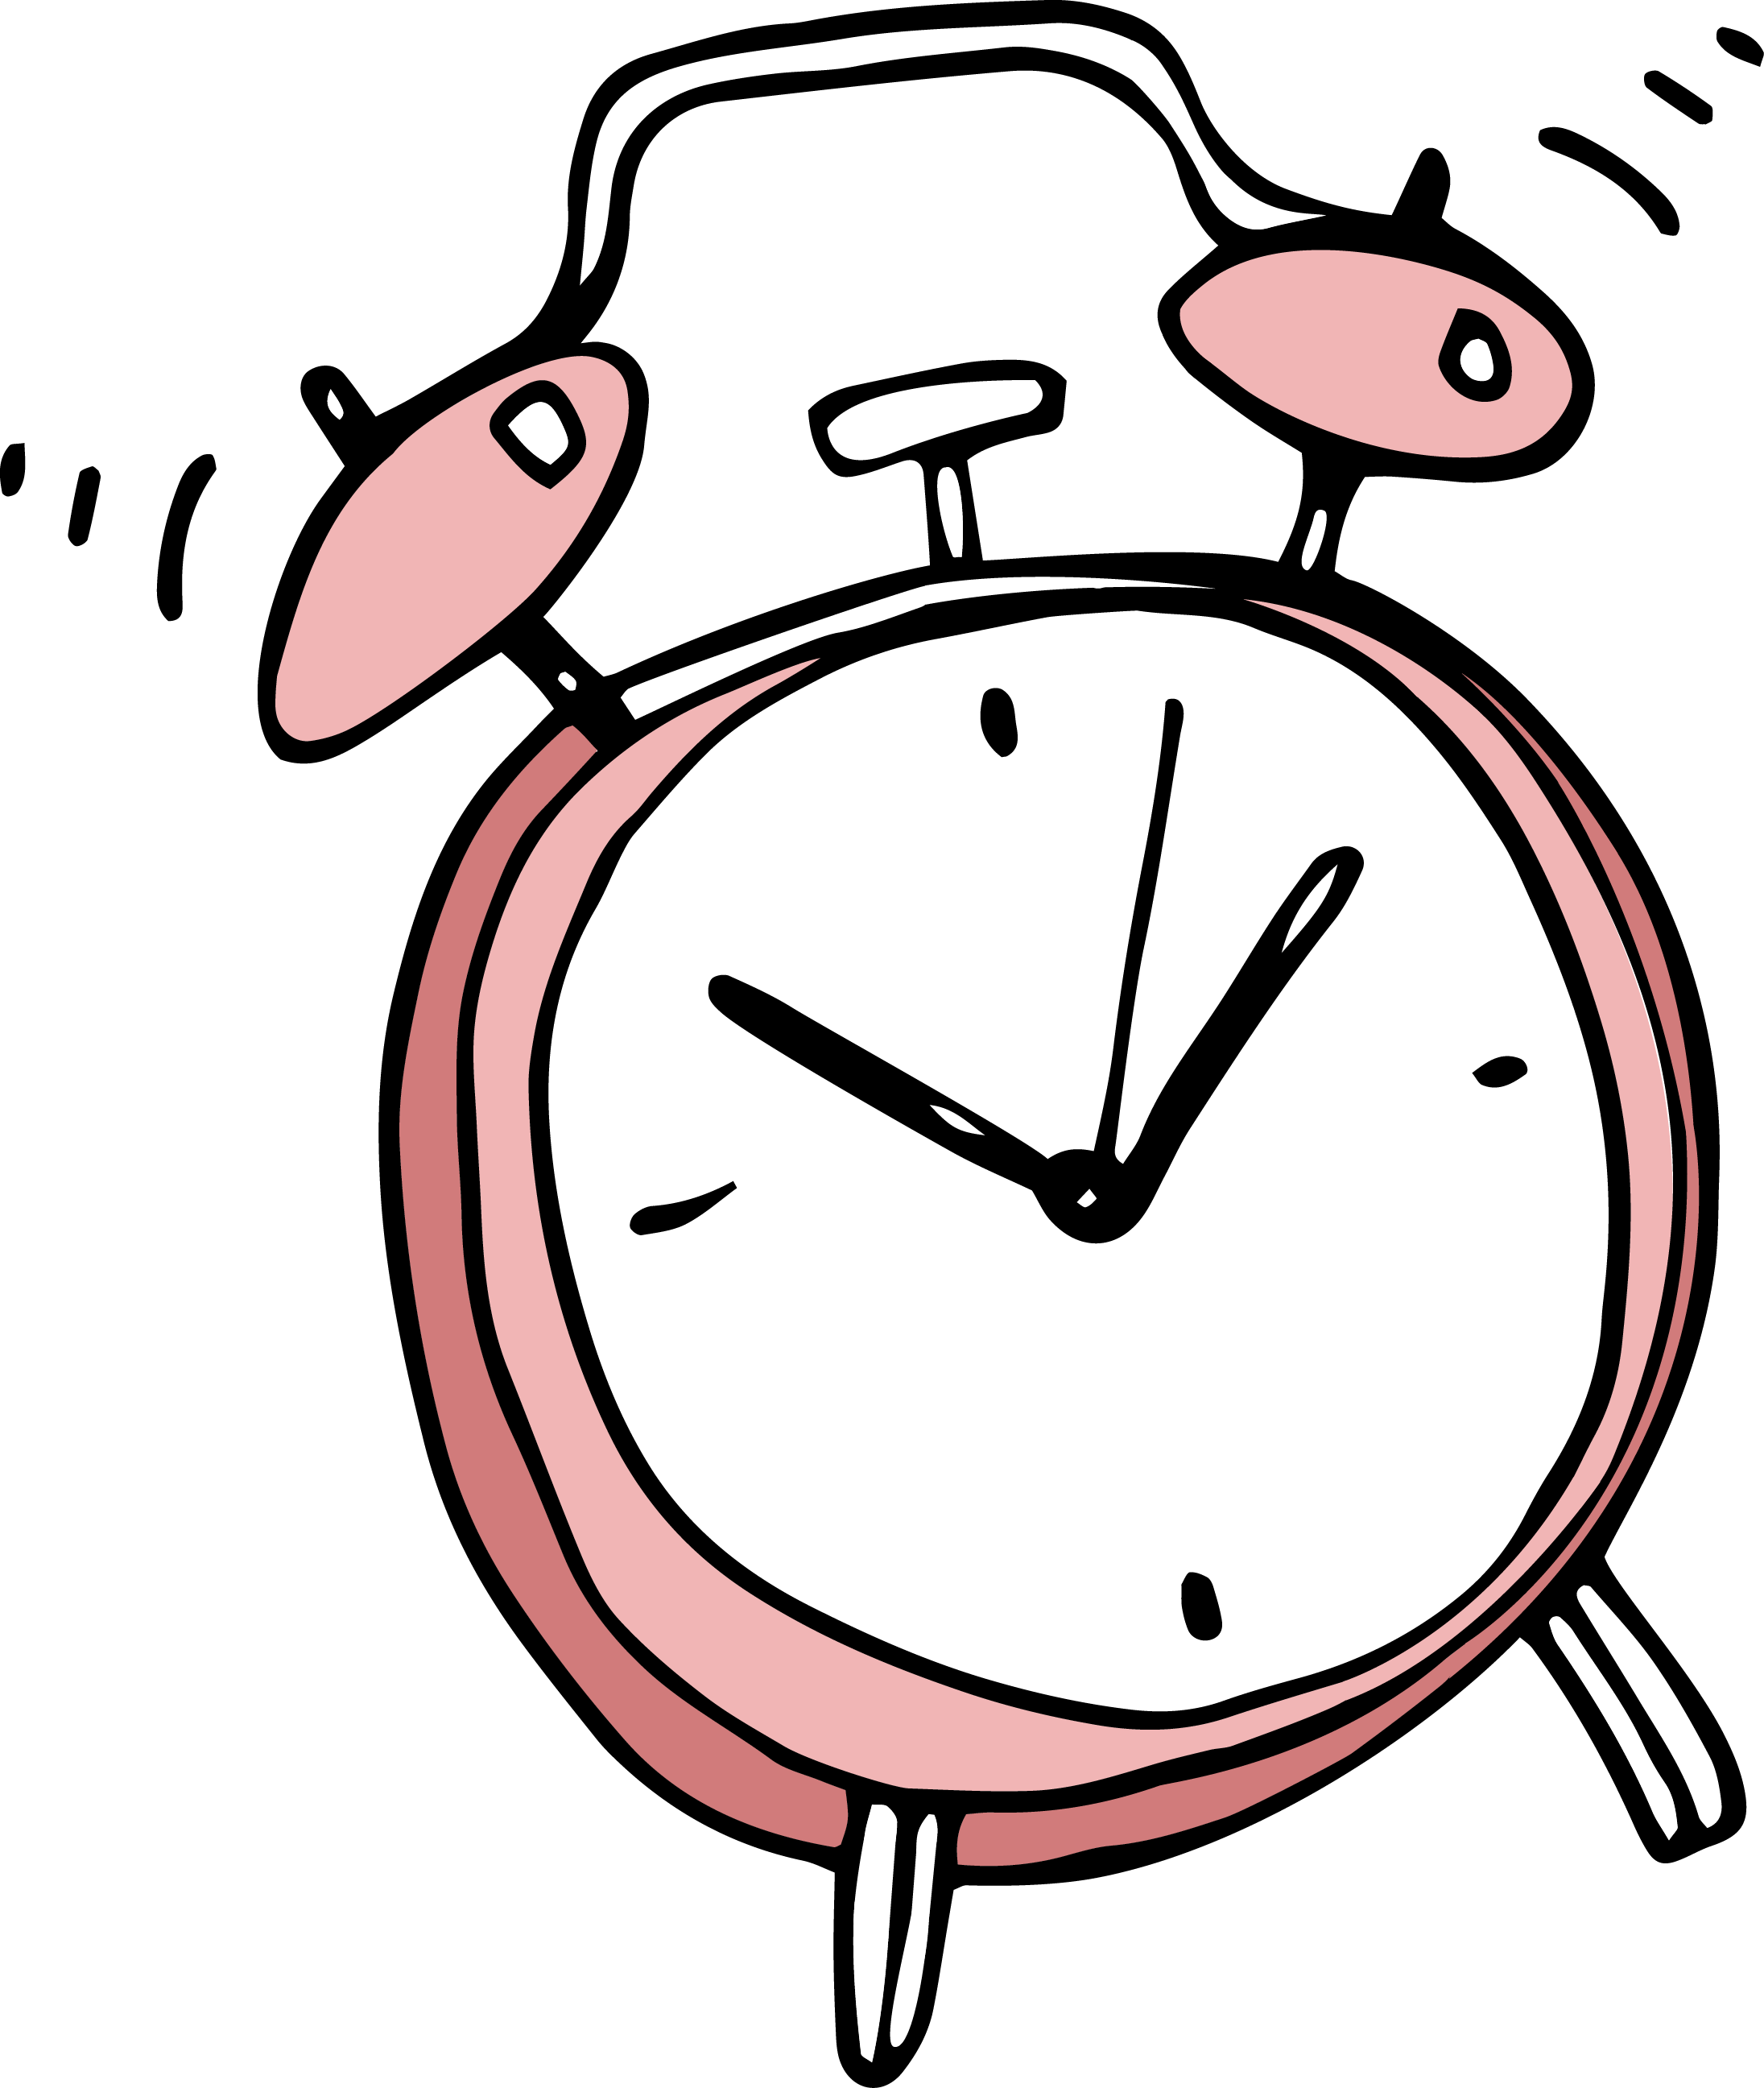 Alarm clock Cartoon Clip art - Cartoon alarm clock png ...